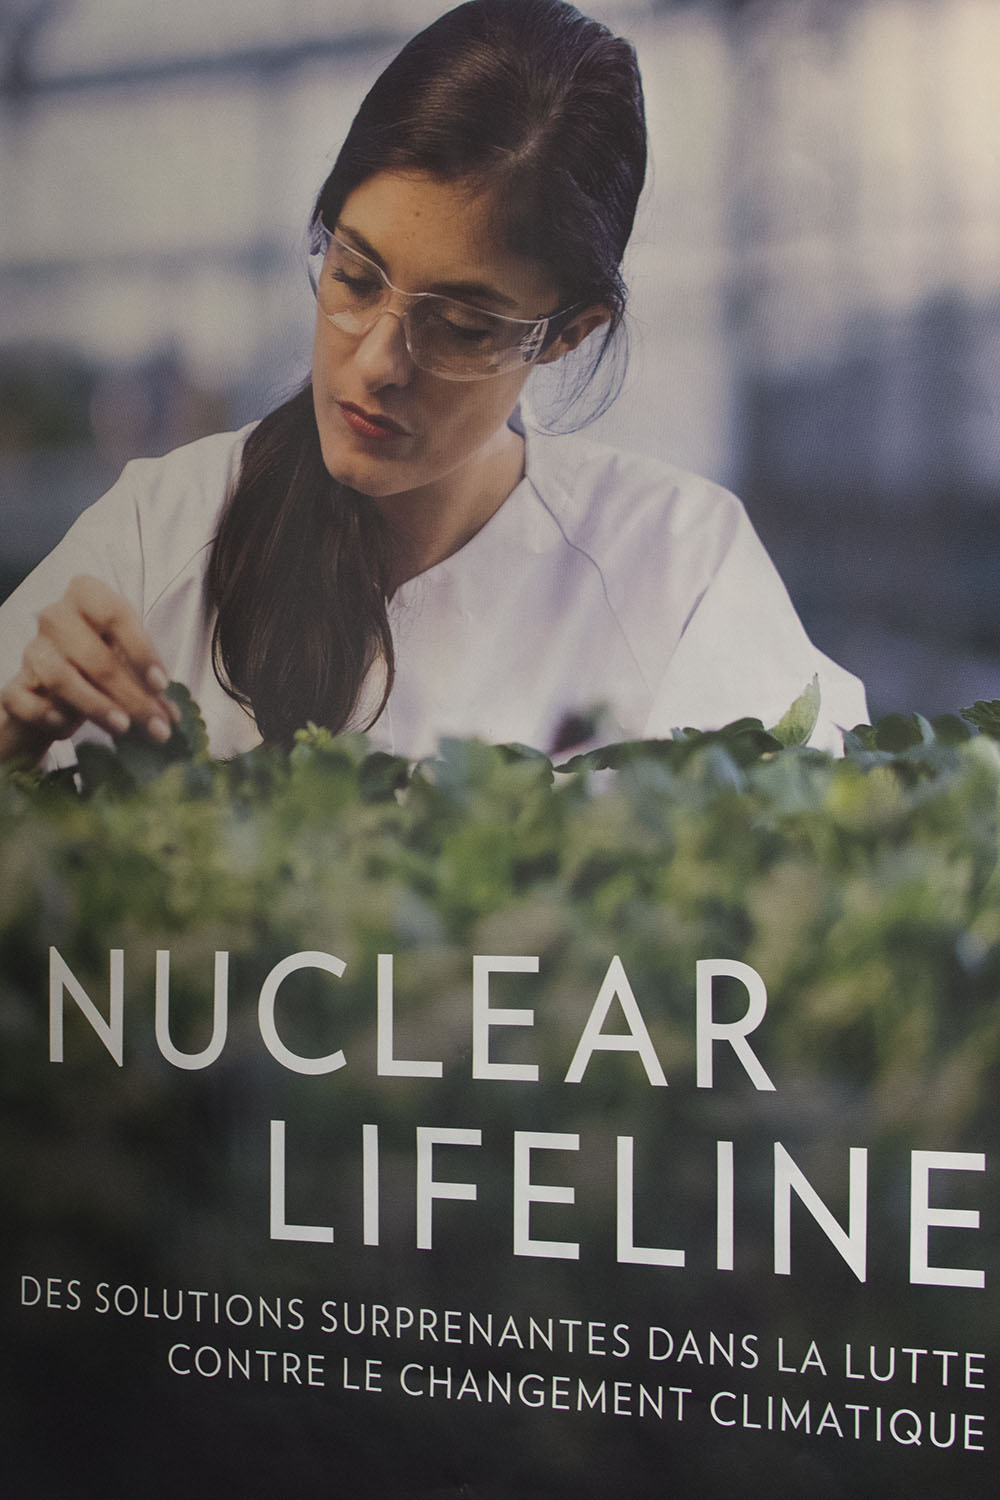 La dernière campagne a porté sur le rôle de la technologie nucléaire dans la lutte contre le changement climatique. Vous pouvez retrouver les différentes campagnes sur leur site internet